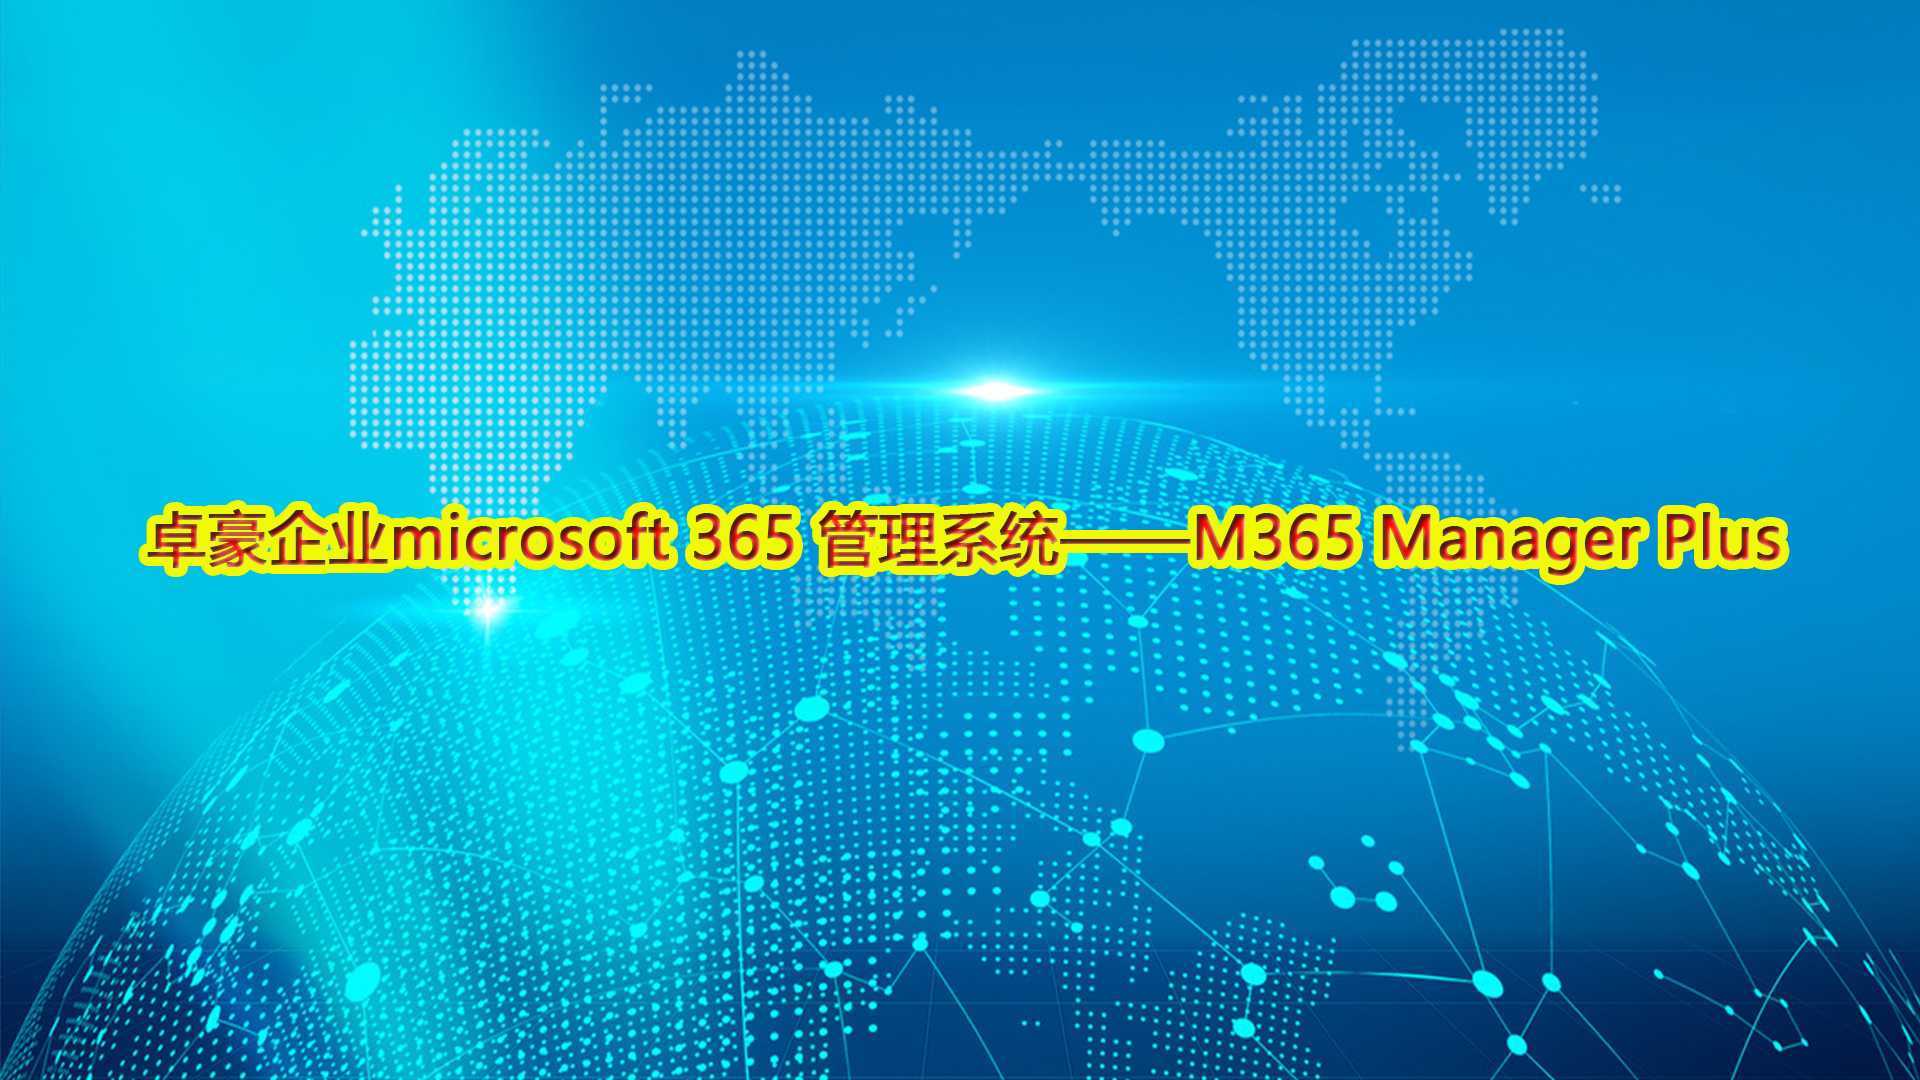 卓豪企业microsoft 365 管理系统